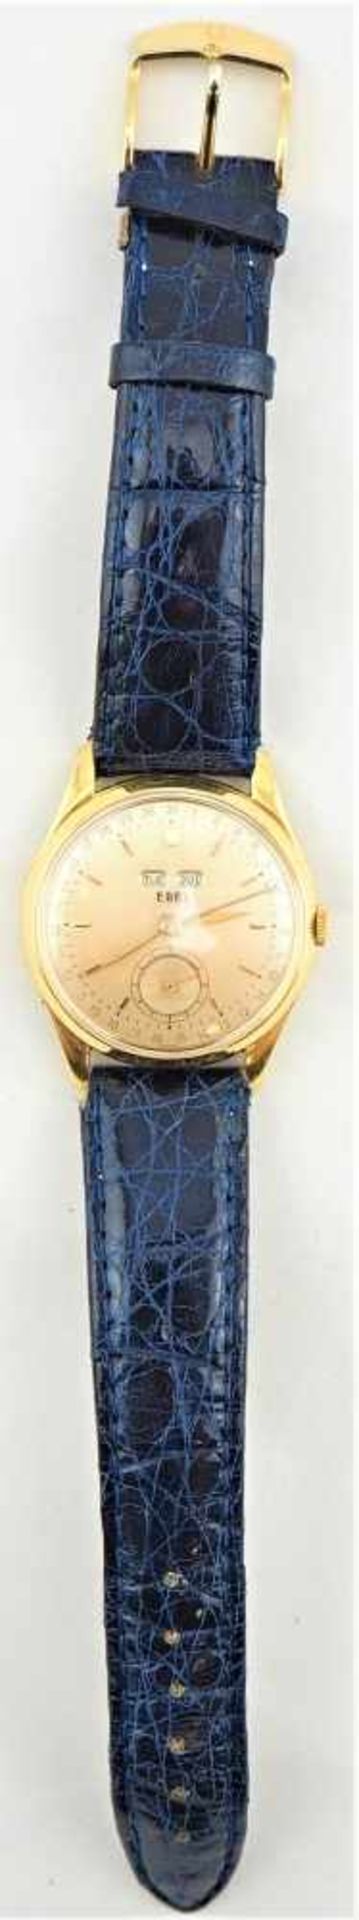 Herrenarmbanduhr "EBEL" Vollkalender, 60er JahreSeltene Armbanduhr des Schweizer Herstellers " - Bild 4 aus 4